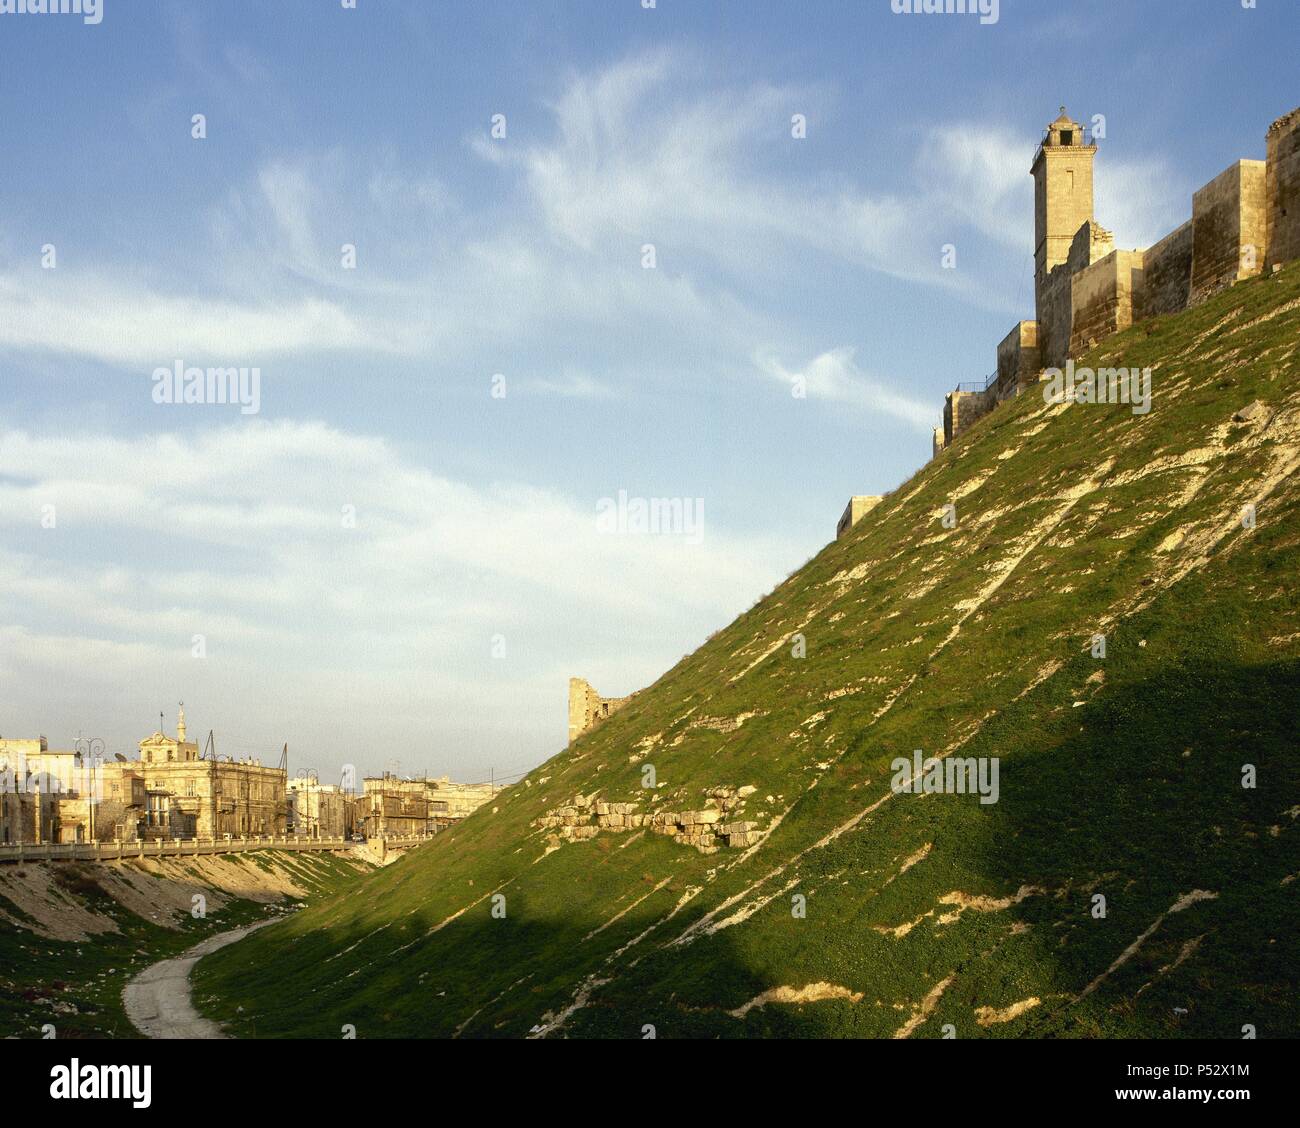 Syrien. Zitadelle von Aleppo. Mittelalterliche befestigte. 3. Jahrtausend BC-12. Jahrhundert n. Chr. gebaut. Stockfoto